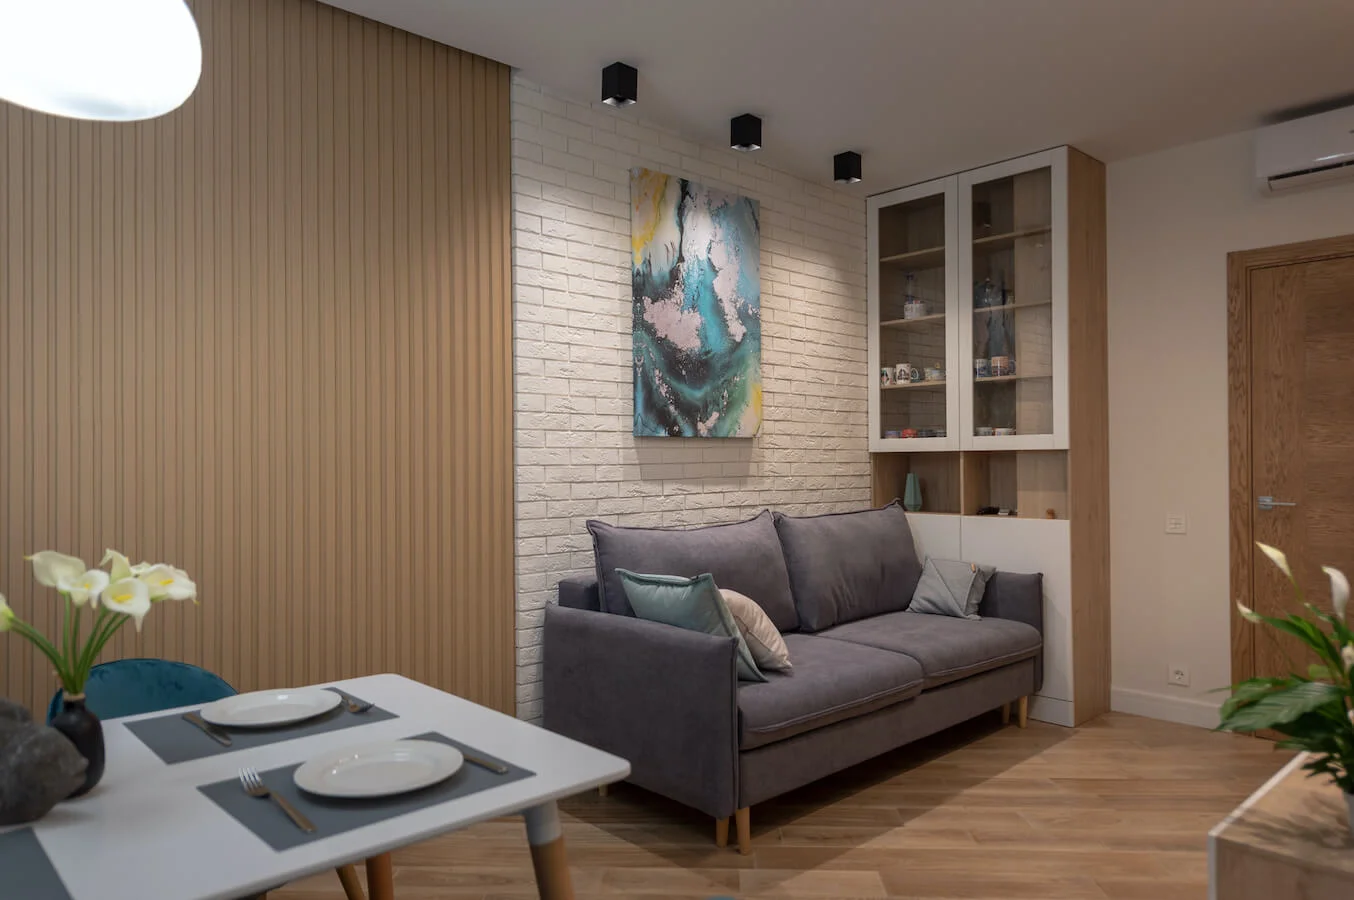 Индивидуальная мебель в интерьере однокомнатной квартиры ➤ Deni-art — Эксклюзивная мебель и кухни на заказ в Москве